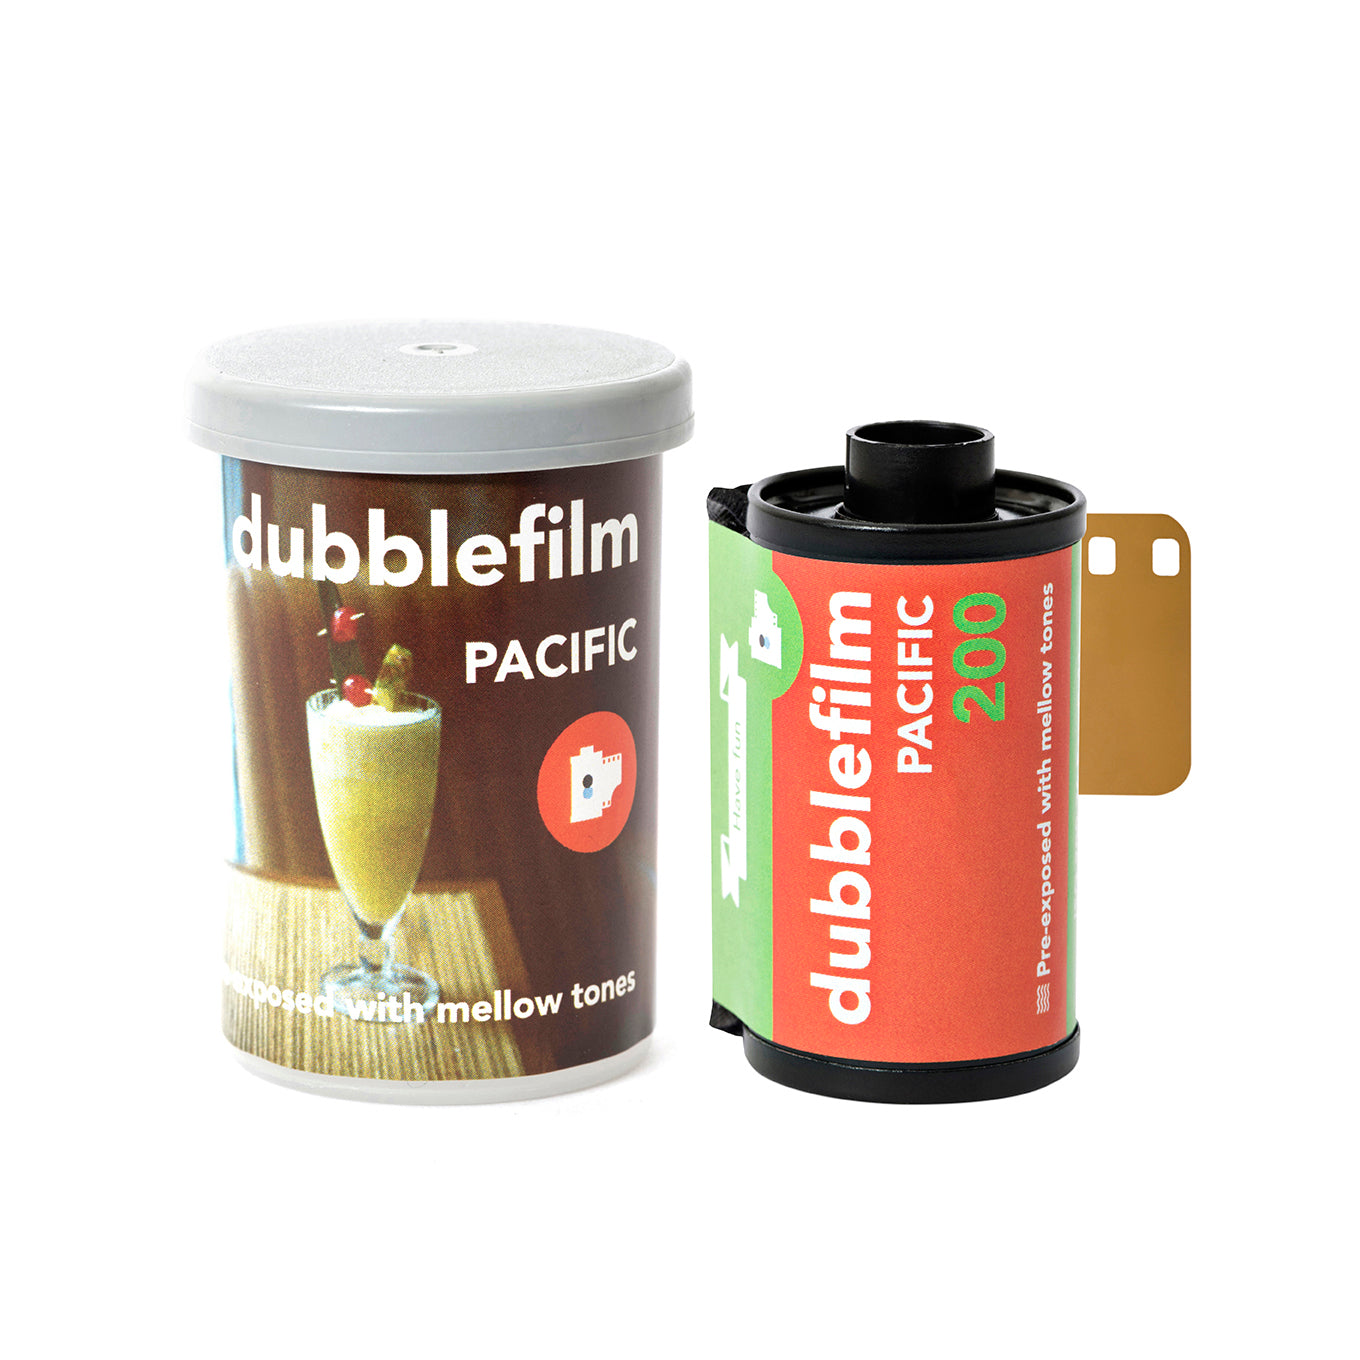 Dubblefilm Pacific 400 ISO